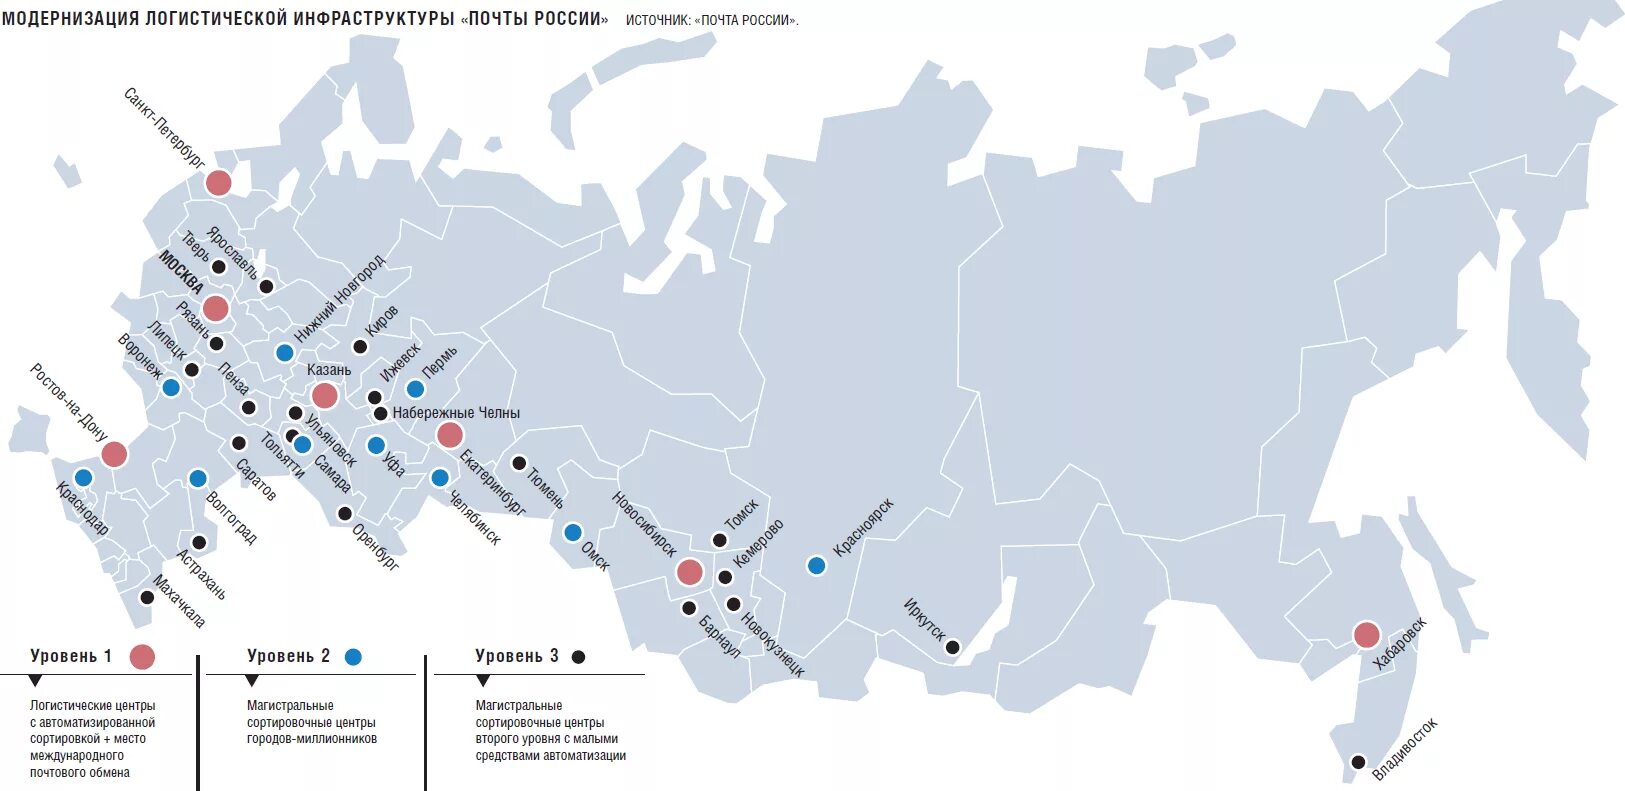 Крупные аэропорты России на карте. 10 Крупных аэропортов в России на карте. Сортировочные центры почты России на карте. Логистическая карта России. Подпишите на карте город миллионер